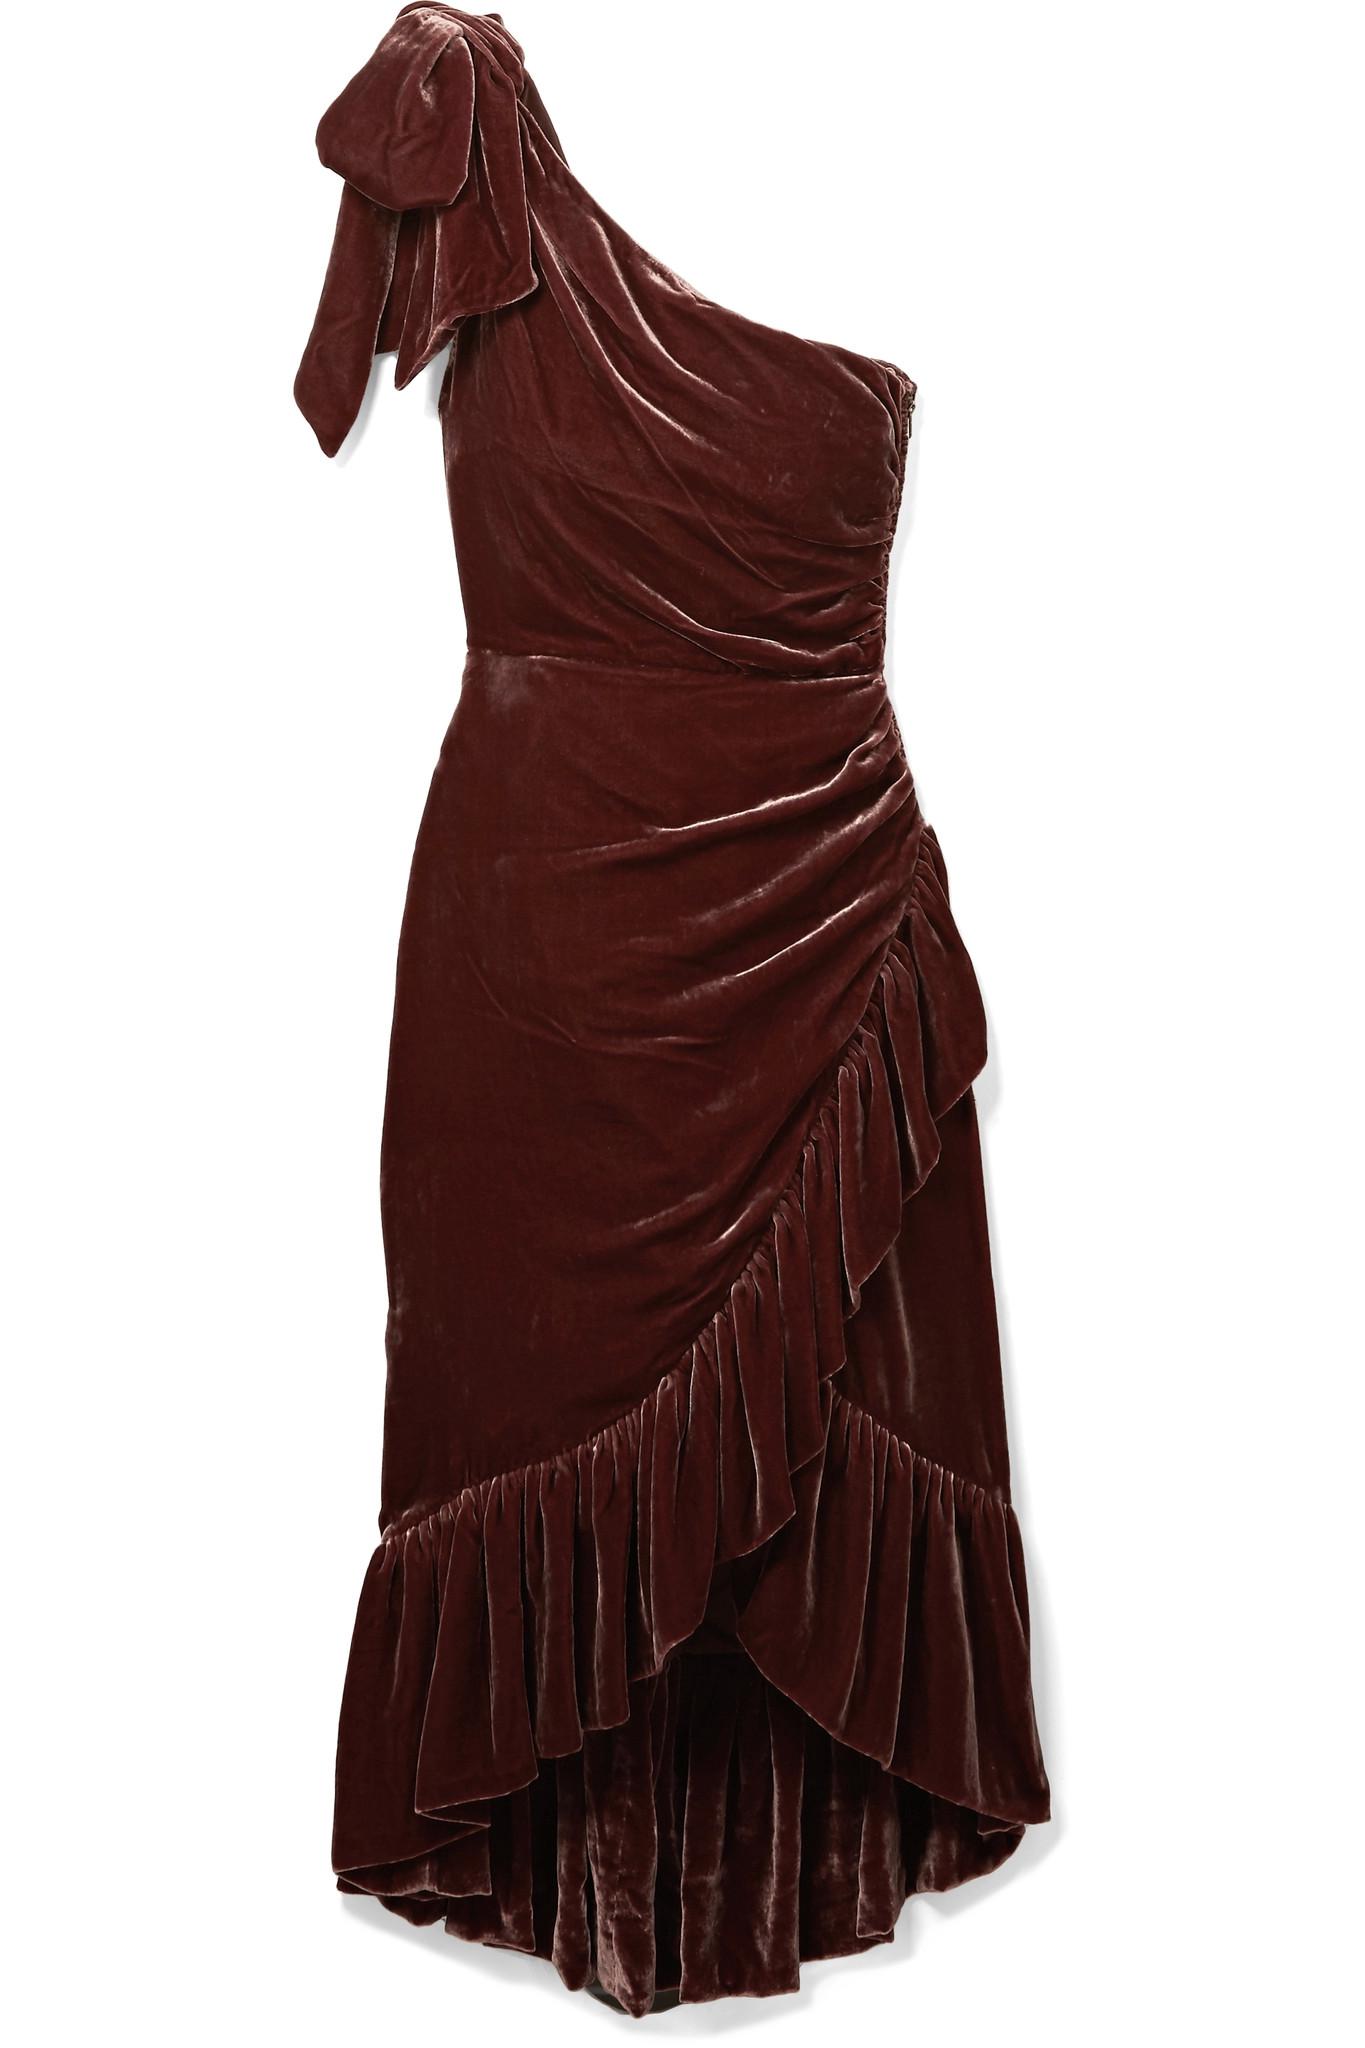 Lyst - Ulla johnson Elisa One-shoulder Ruffled Velvet Dress in Brown